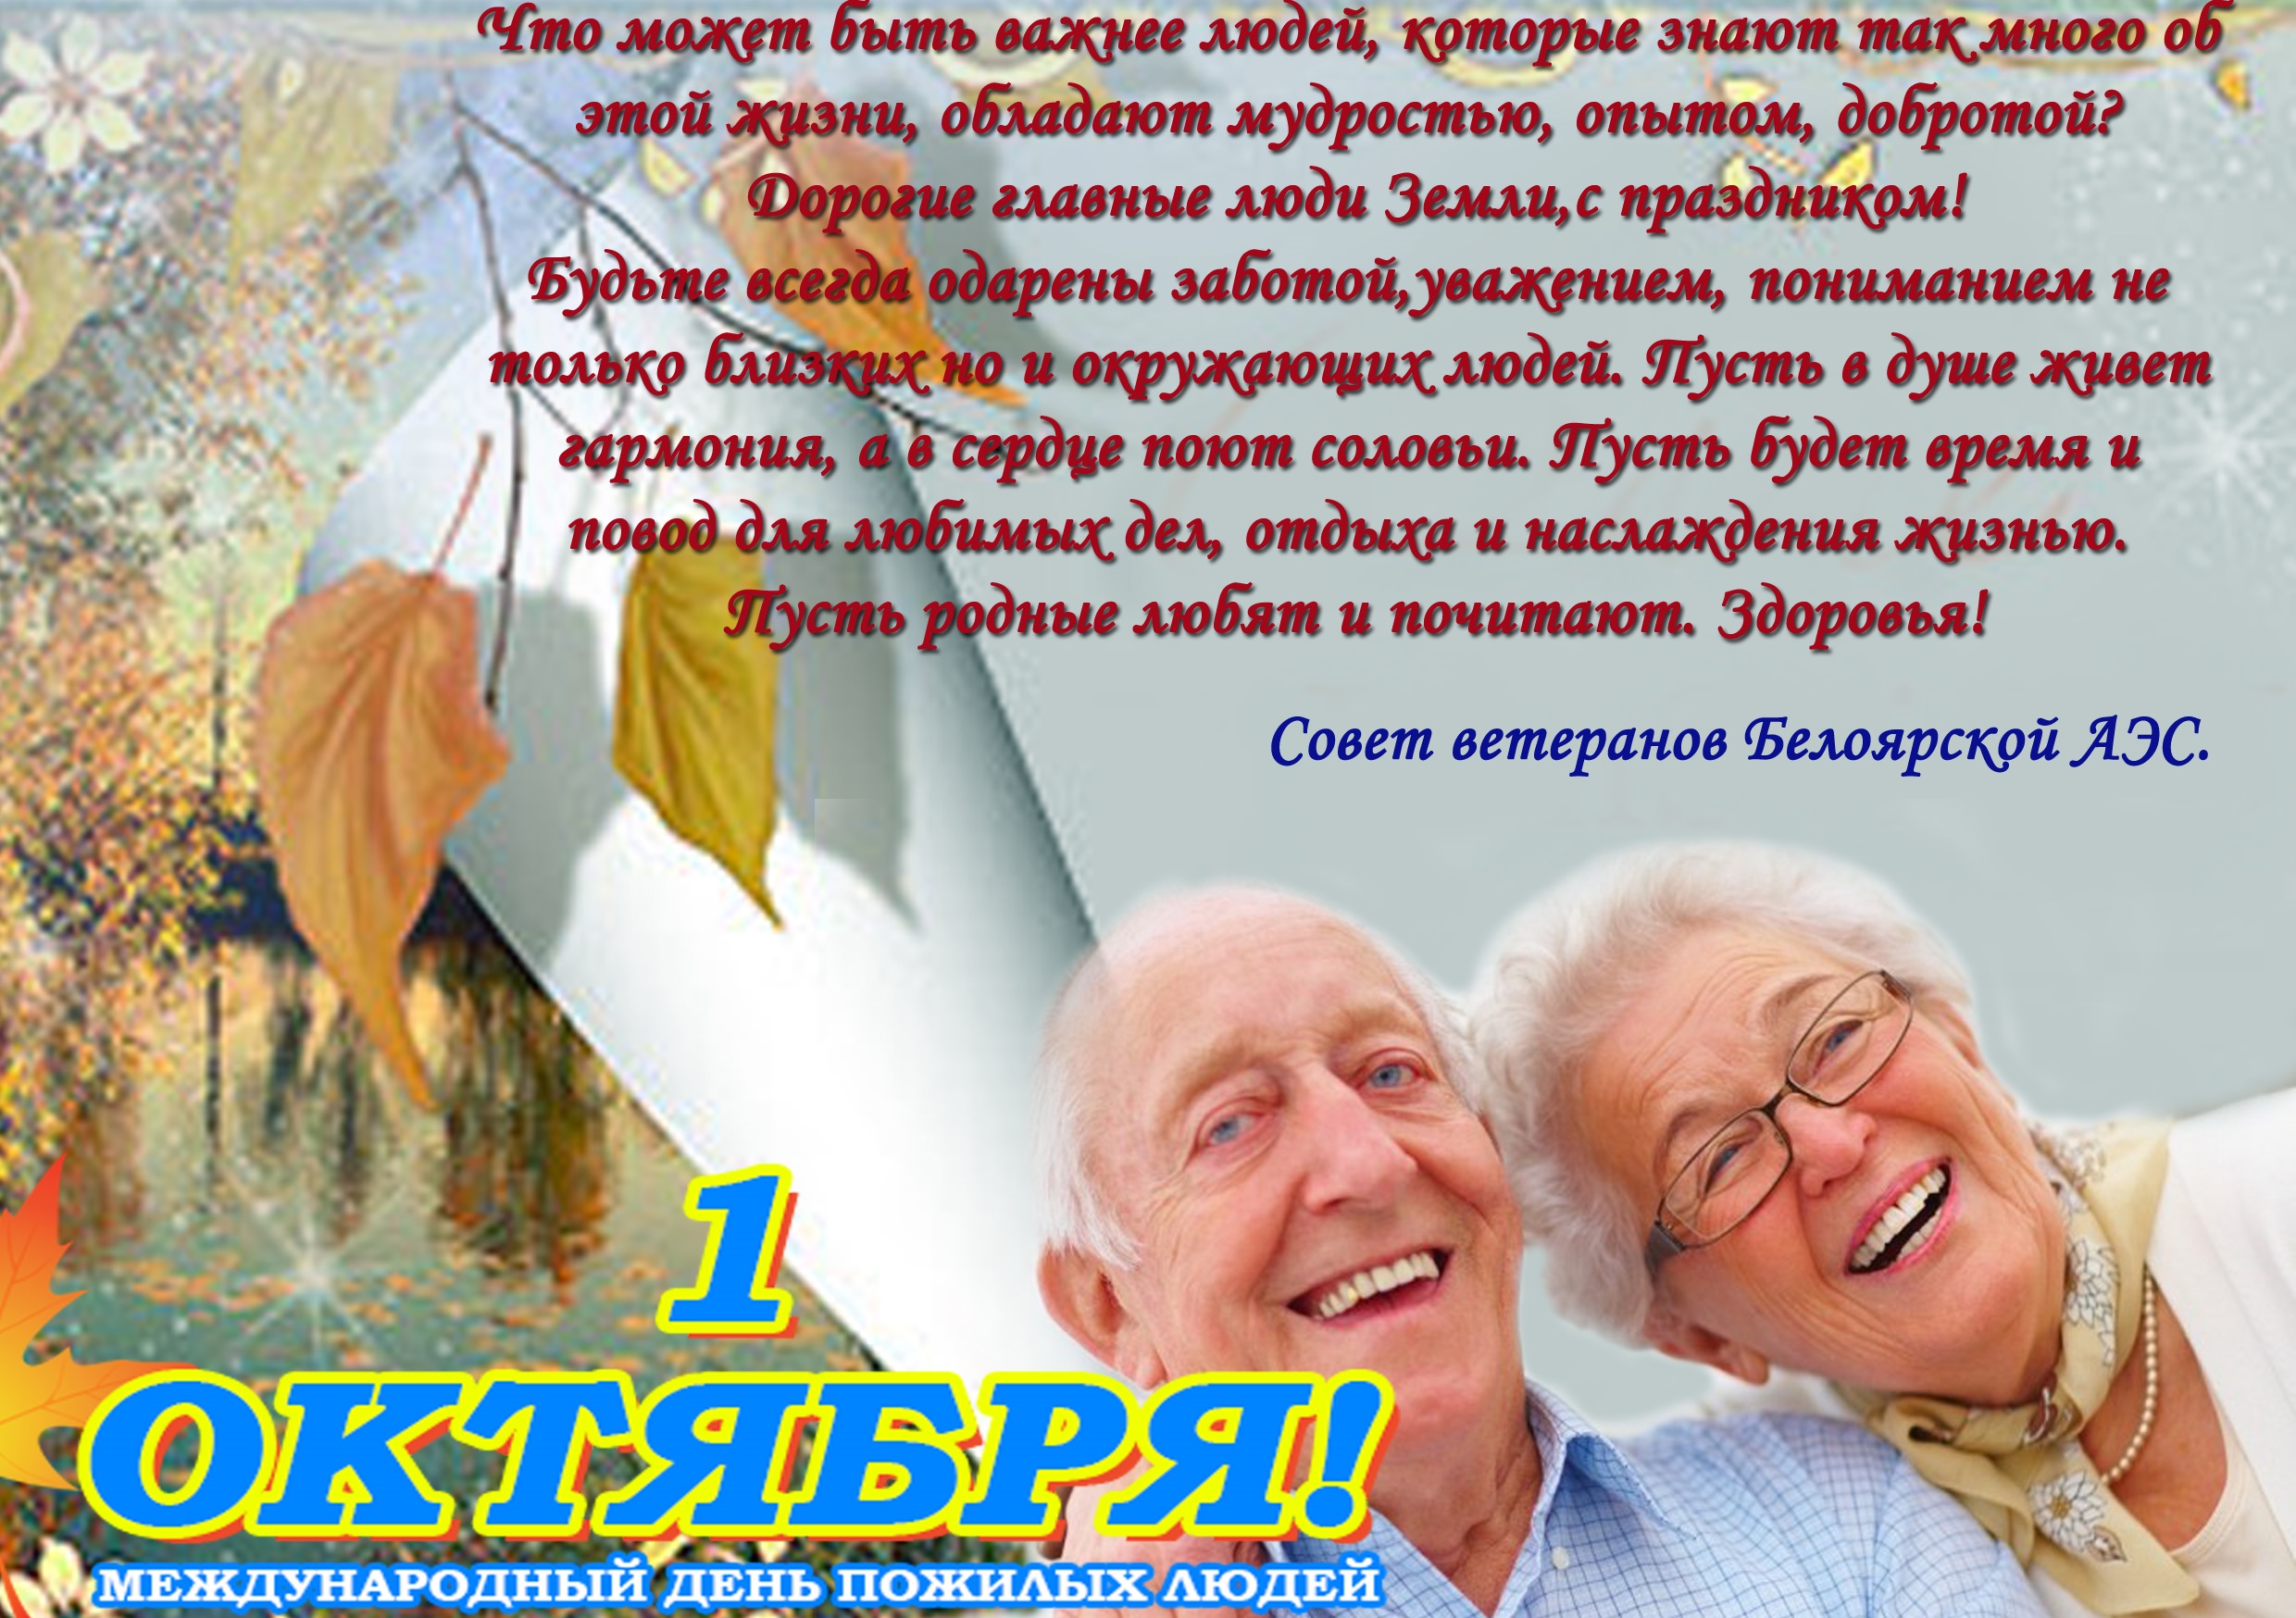 Поздравление с днем пожилого возраста. Поздравление для пожилых людей. Поздравление с днем пожилого человека. Открытка ко Дню пожилого человека. Пожелания на день пожилых людей.